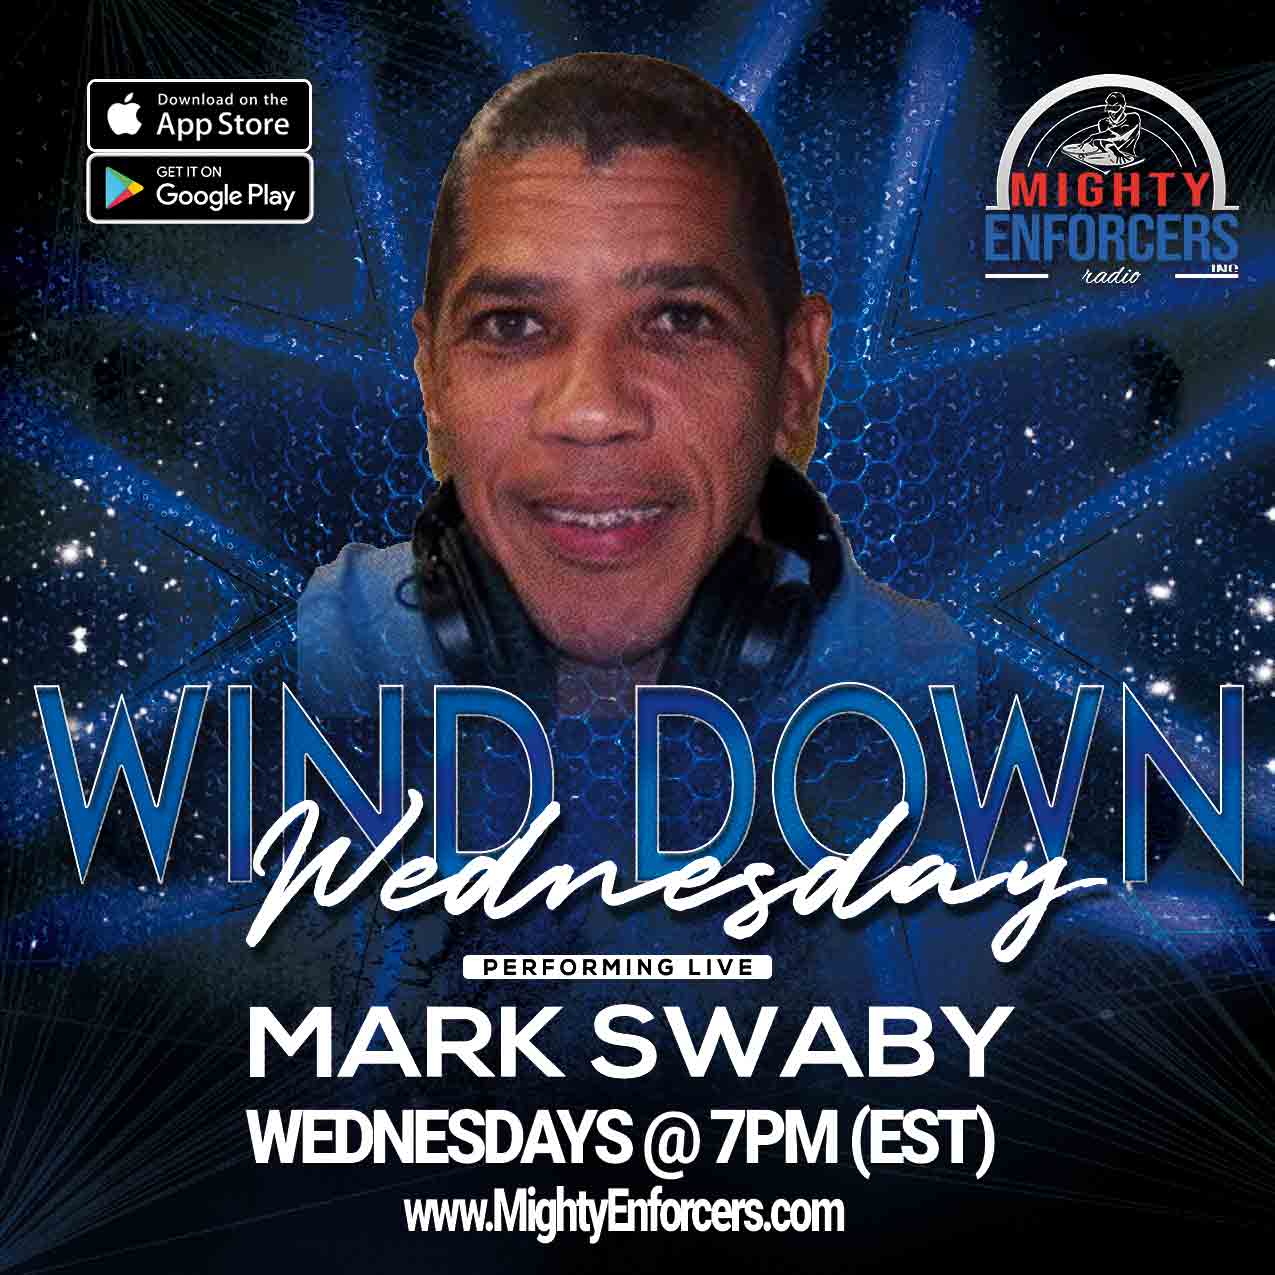 Mark Swaby Wind Down Wednesdays